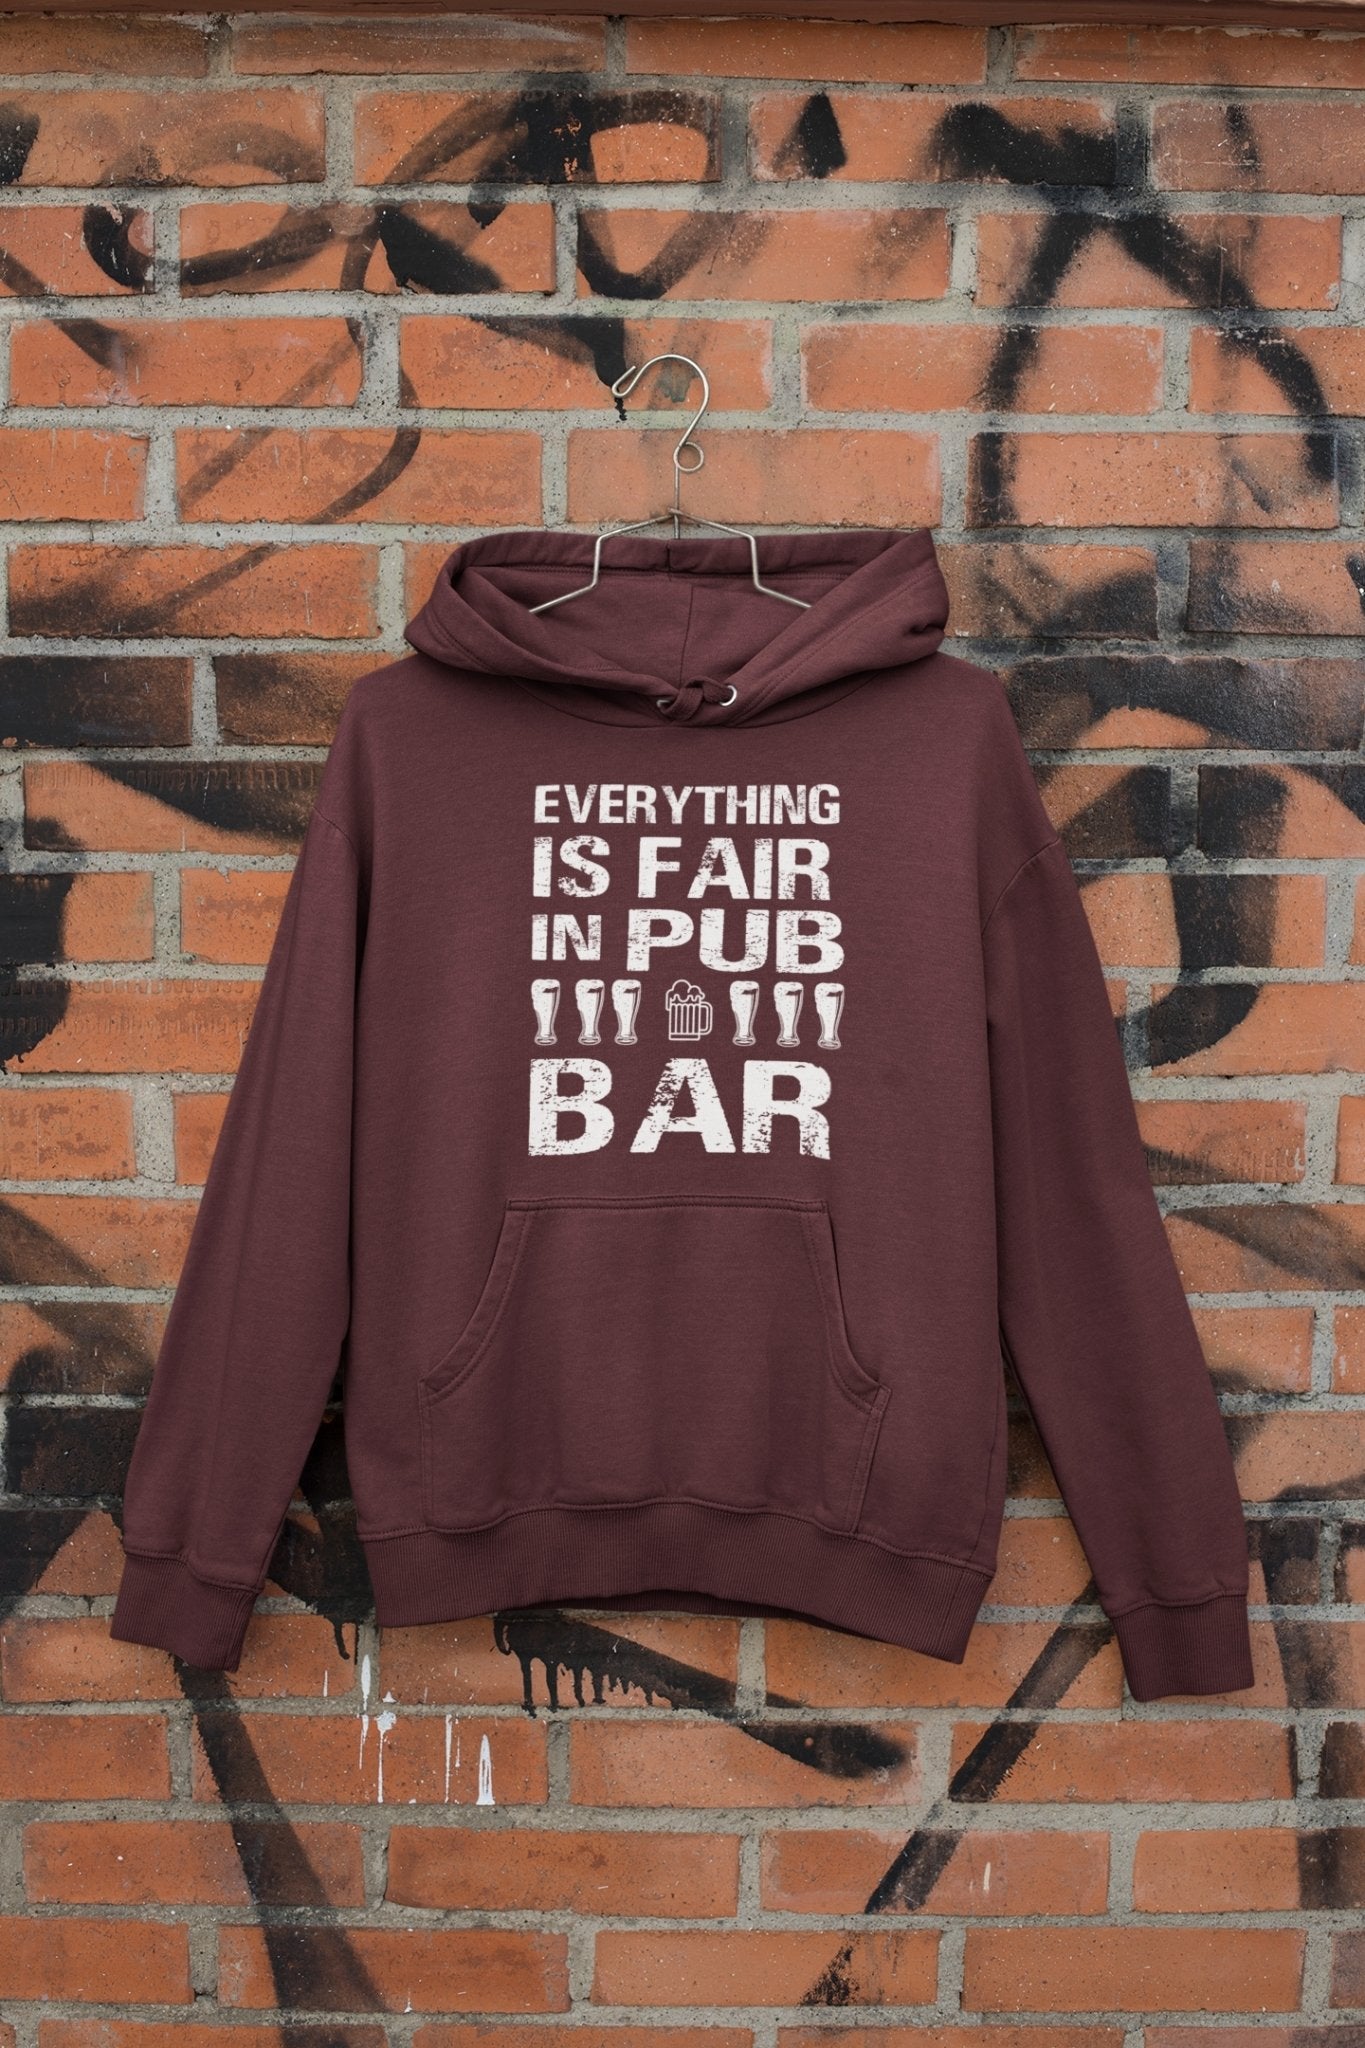 Everthing Is Fair In Pub And Bar Men Hoodies-FunkyTeesClub - Funky Tees Club